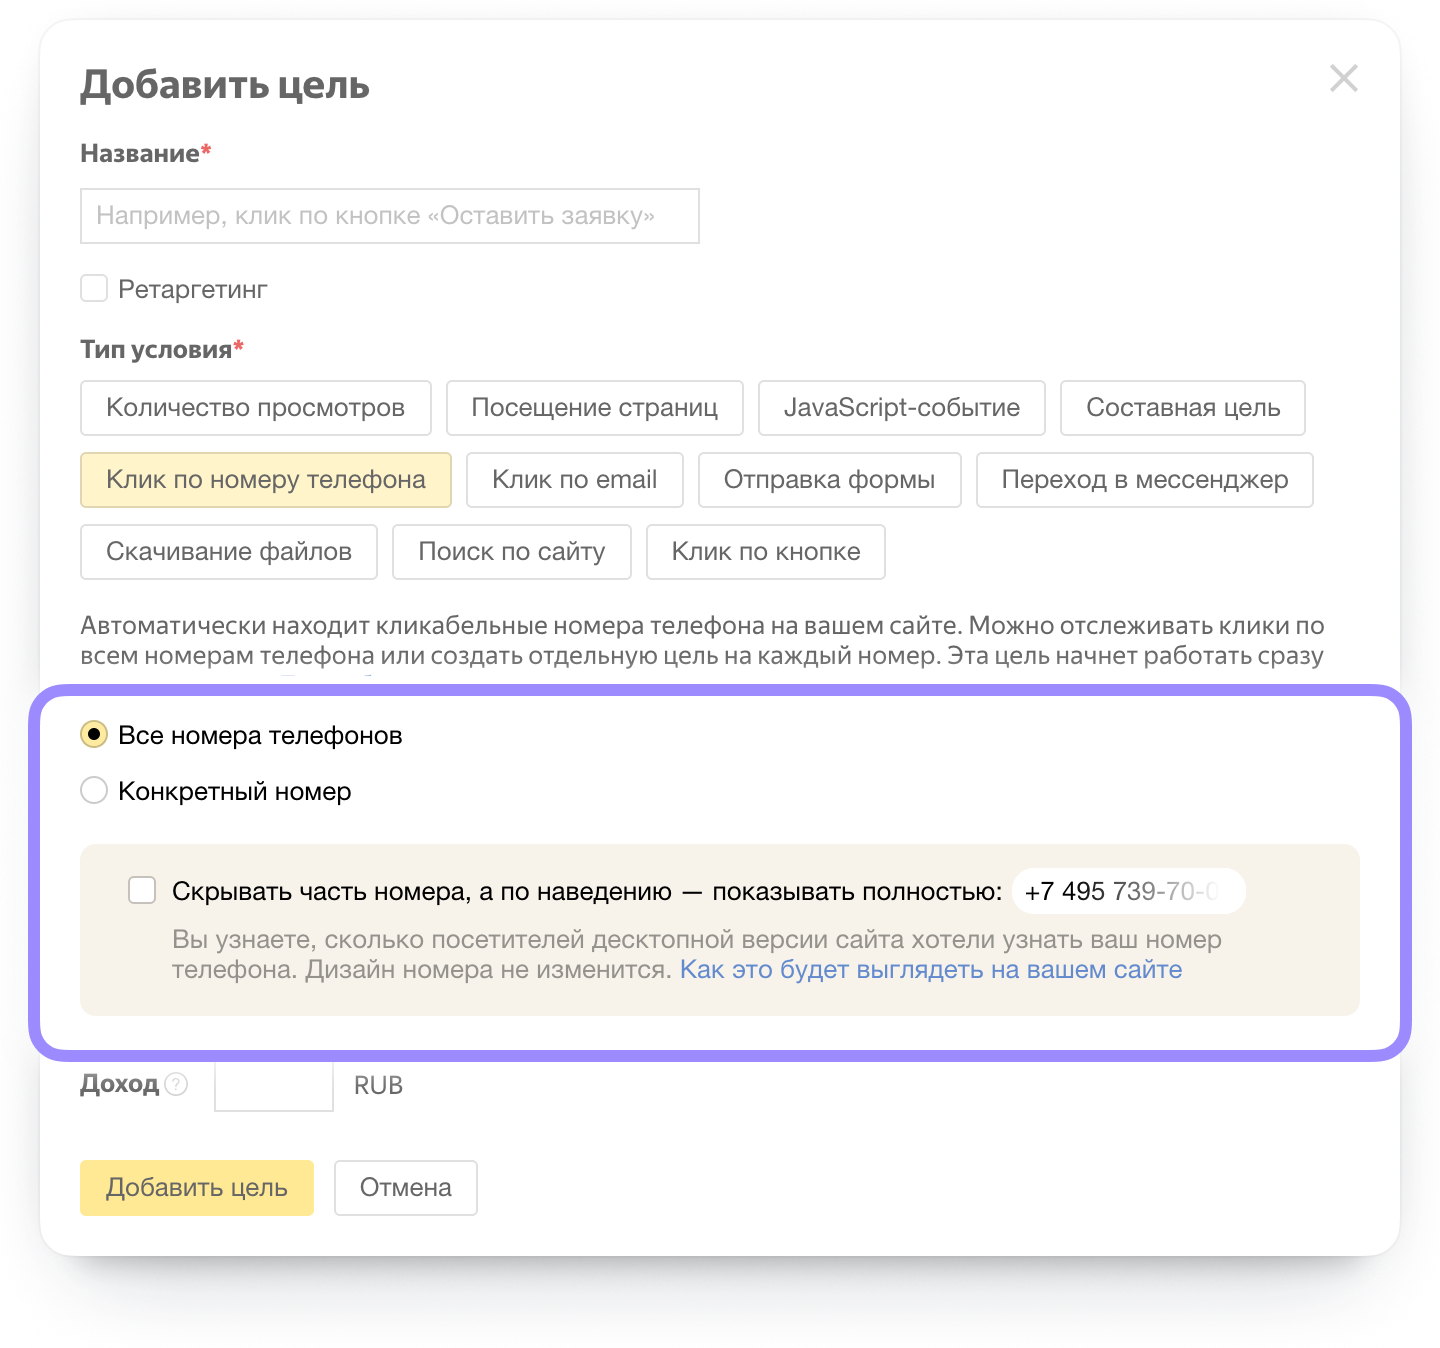 Яндекс.Метрика научилась отслеживать звонки с десктопной версии сайта